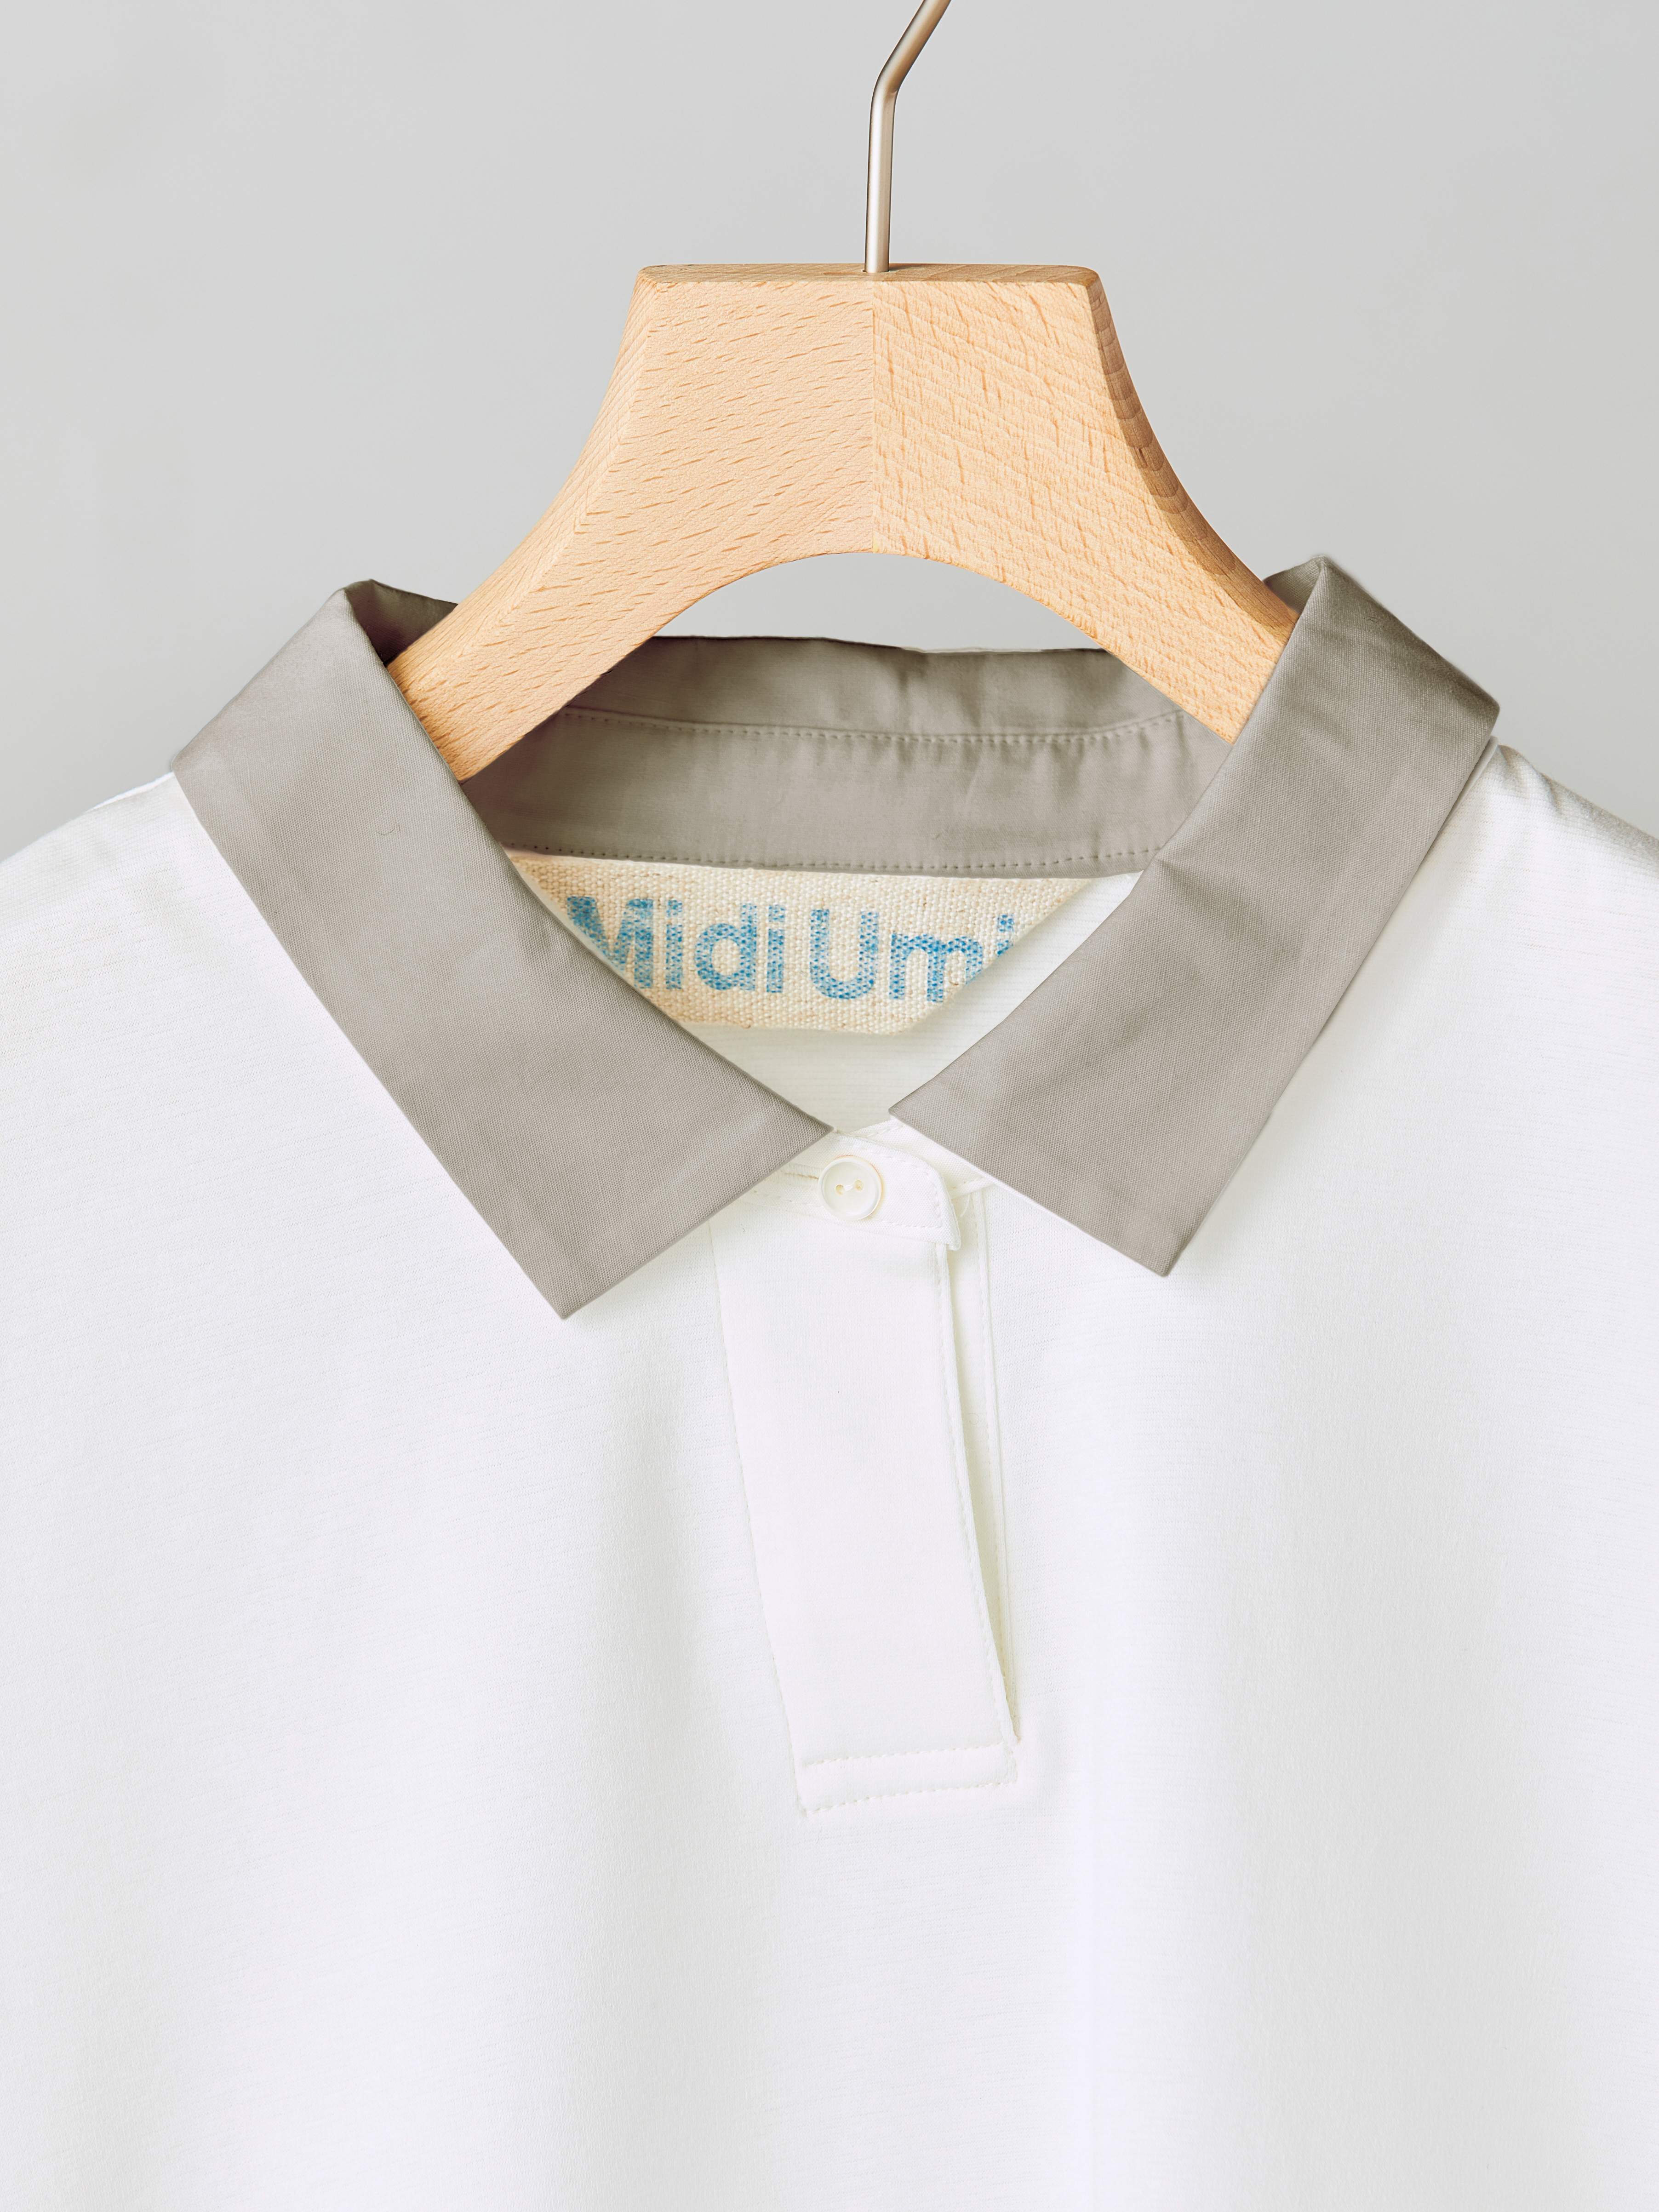 ポロシャツの特徴的なディテールである衿元を小さく仕上げることで、全体に大人っぽく品よく見えるよう計算されたデザイン。